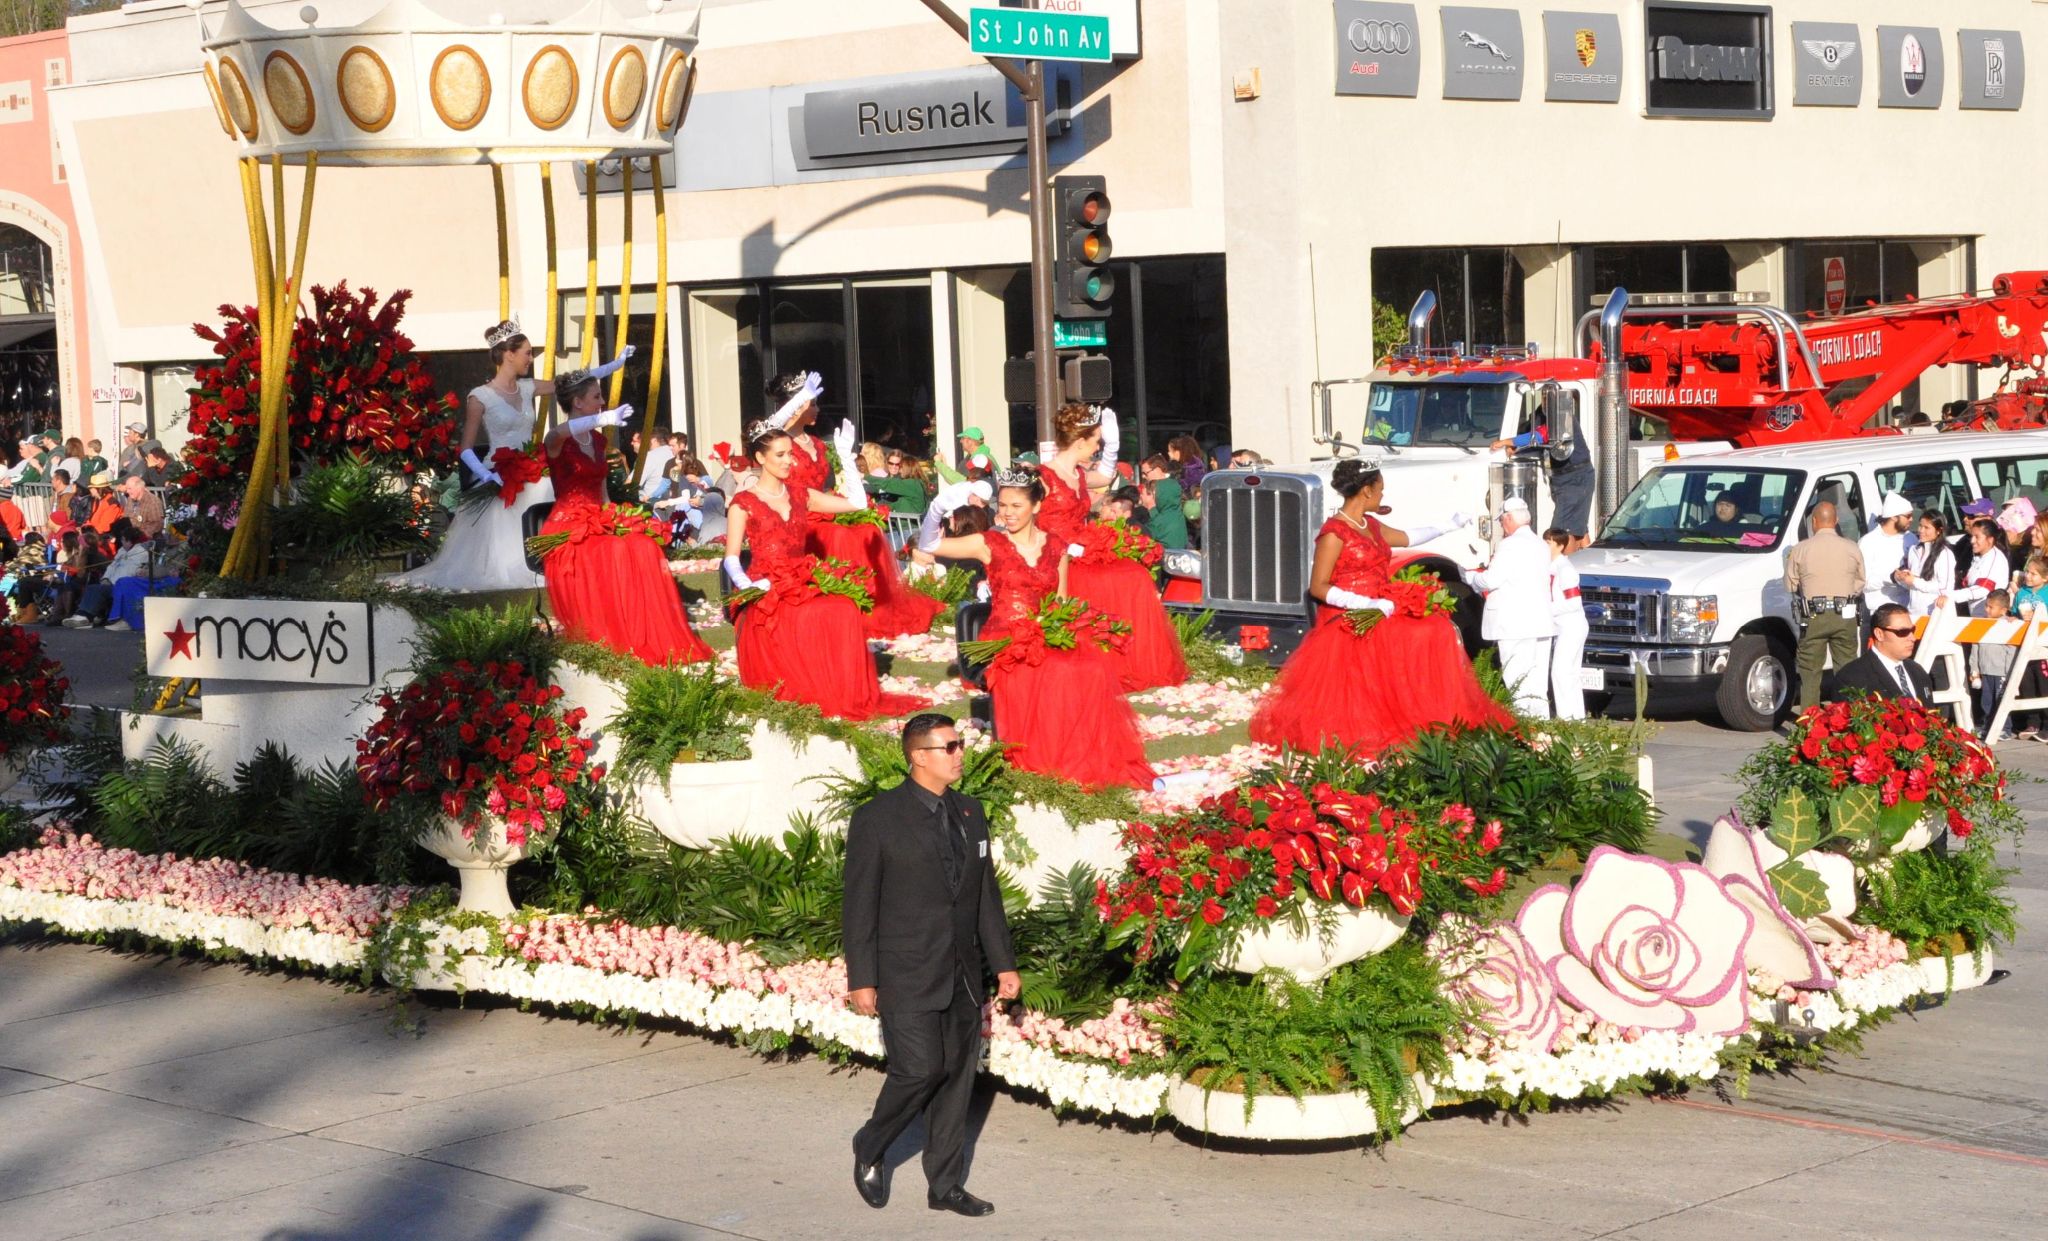 Macy's - Queen and Princesses (a), Tournament of Roses Parade, Pasadena, CA - 2014-01-01